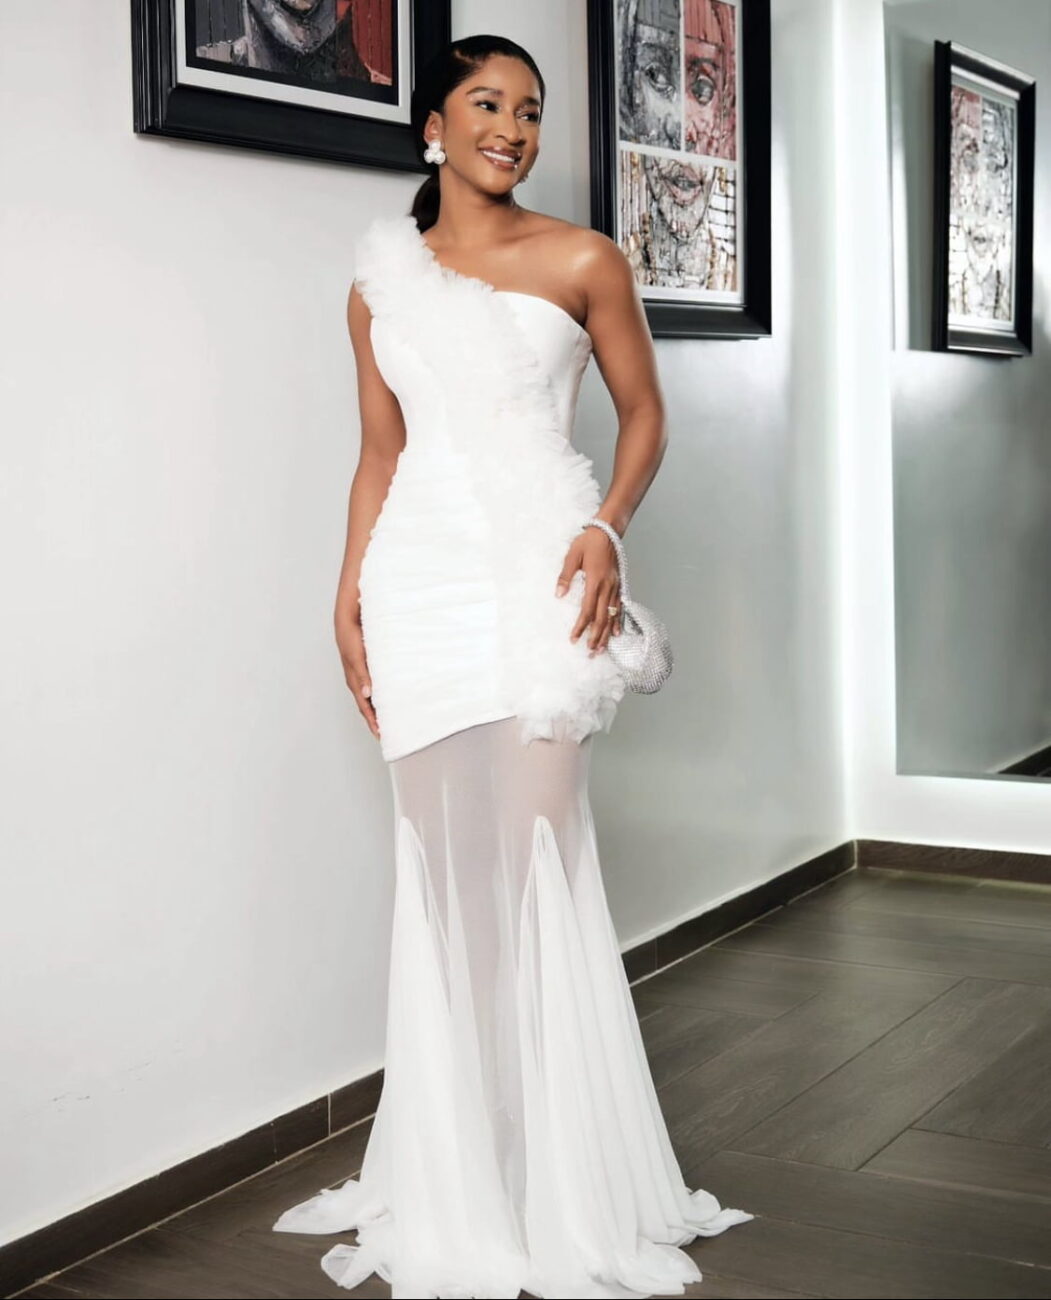 Adesua Etomi in a gorgeous white dress.